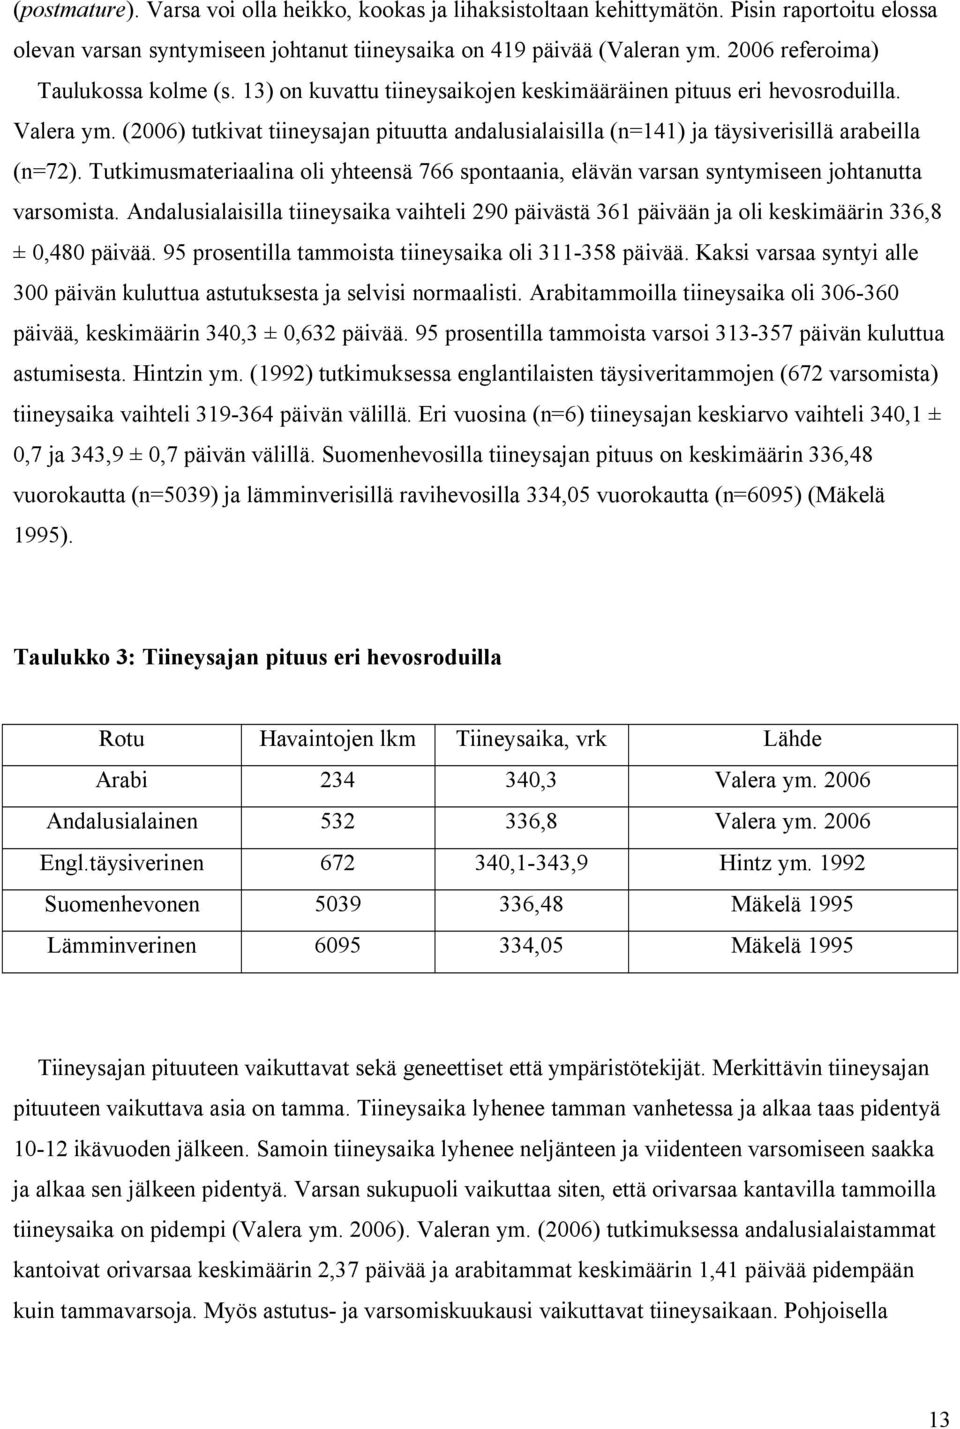 (2006) tutkivat tiineysajan pituutta andalusialaisilla (n=141) ja täysiverisillä arabeilla (n=72). Tutkimusmateriaalina oli yhteensä 766 spontaania, elävän varsan syntymiseen johtanutta varsomista.